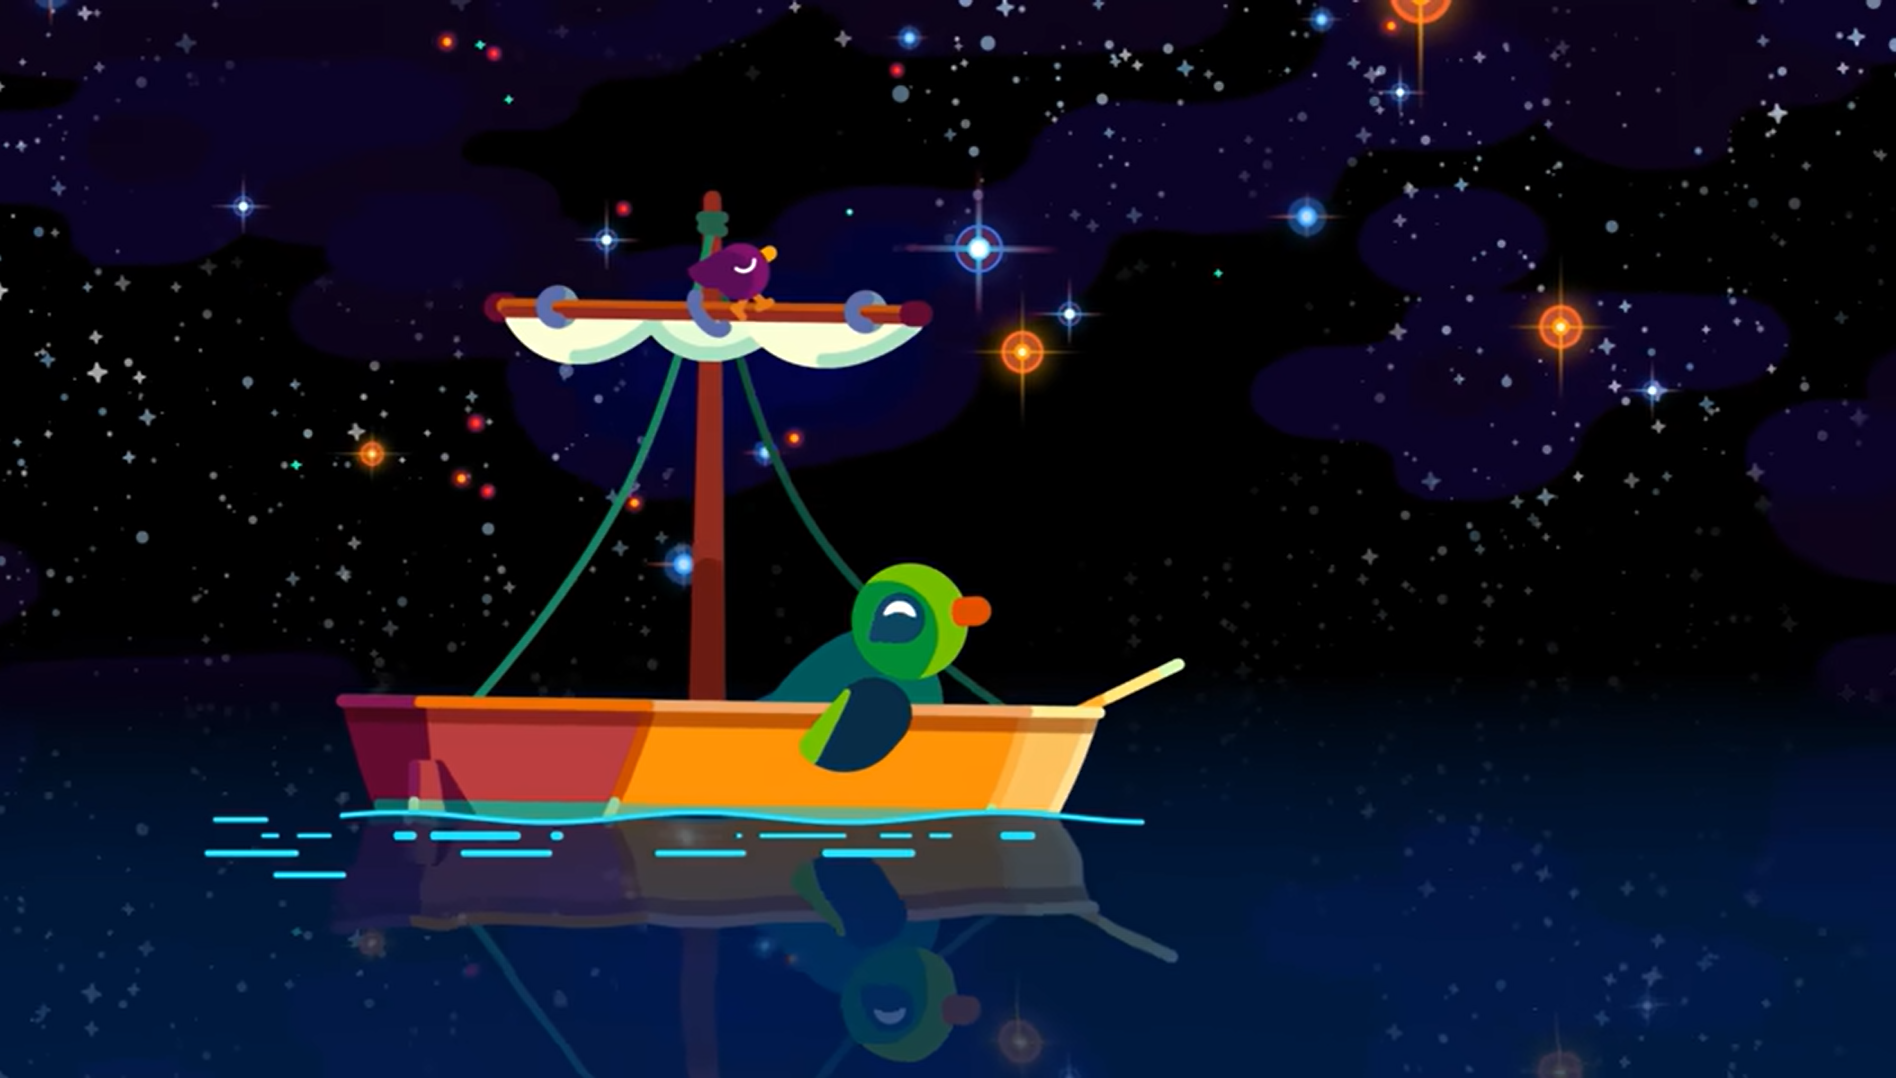 Een cartoon-afbeelding van een schip wat op stil water drijft. De lucht is gevuld met gekleurde lichtpunten (sterren en sterrenstelsels).